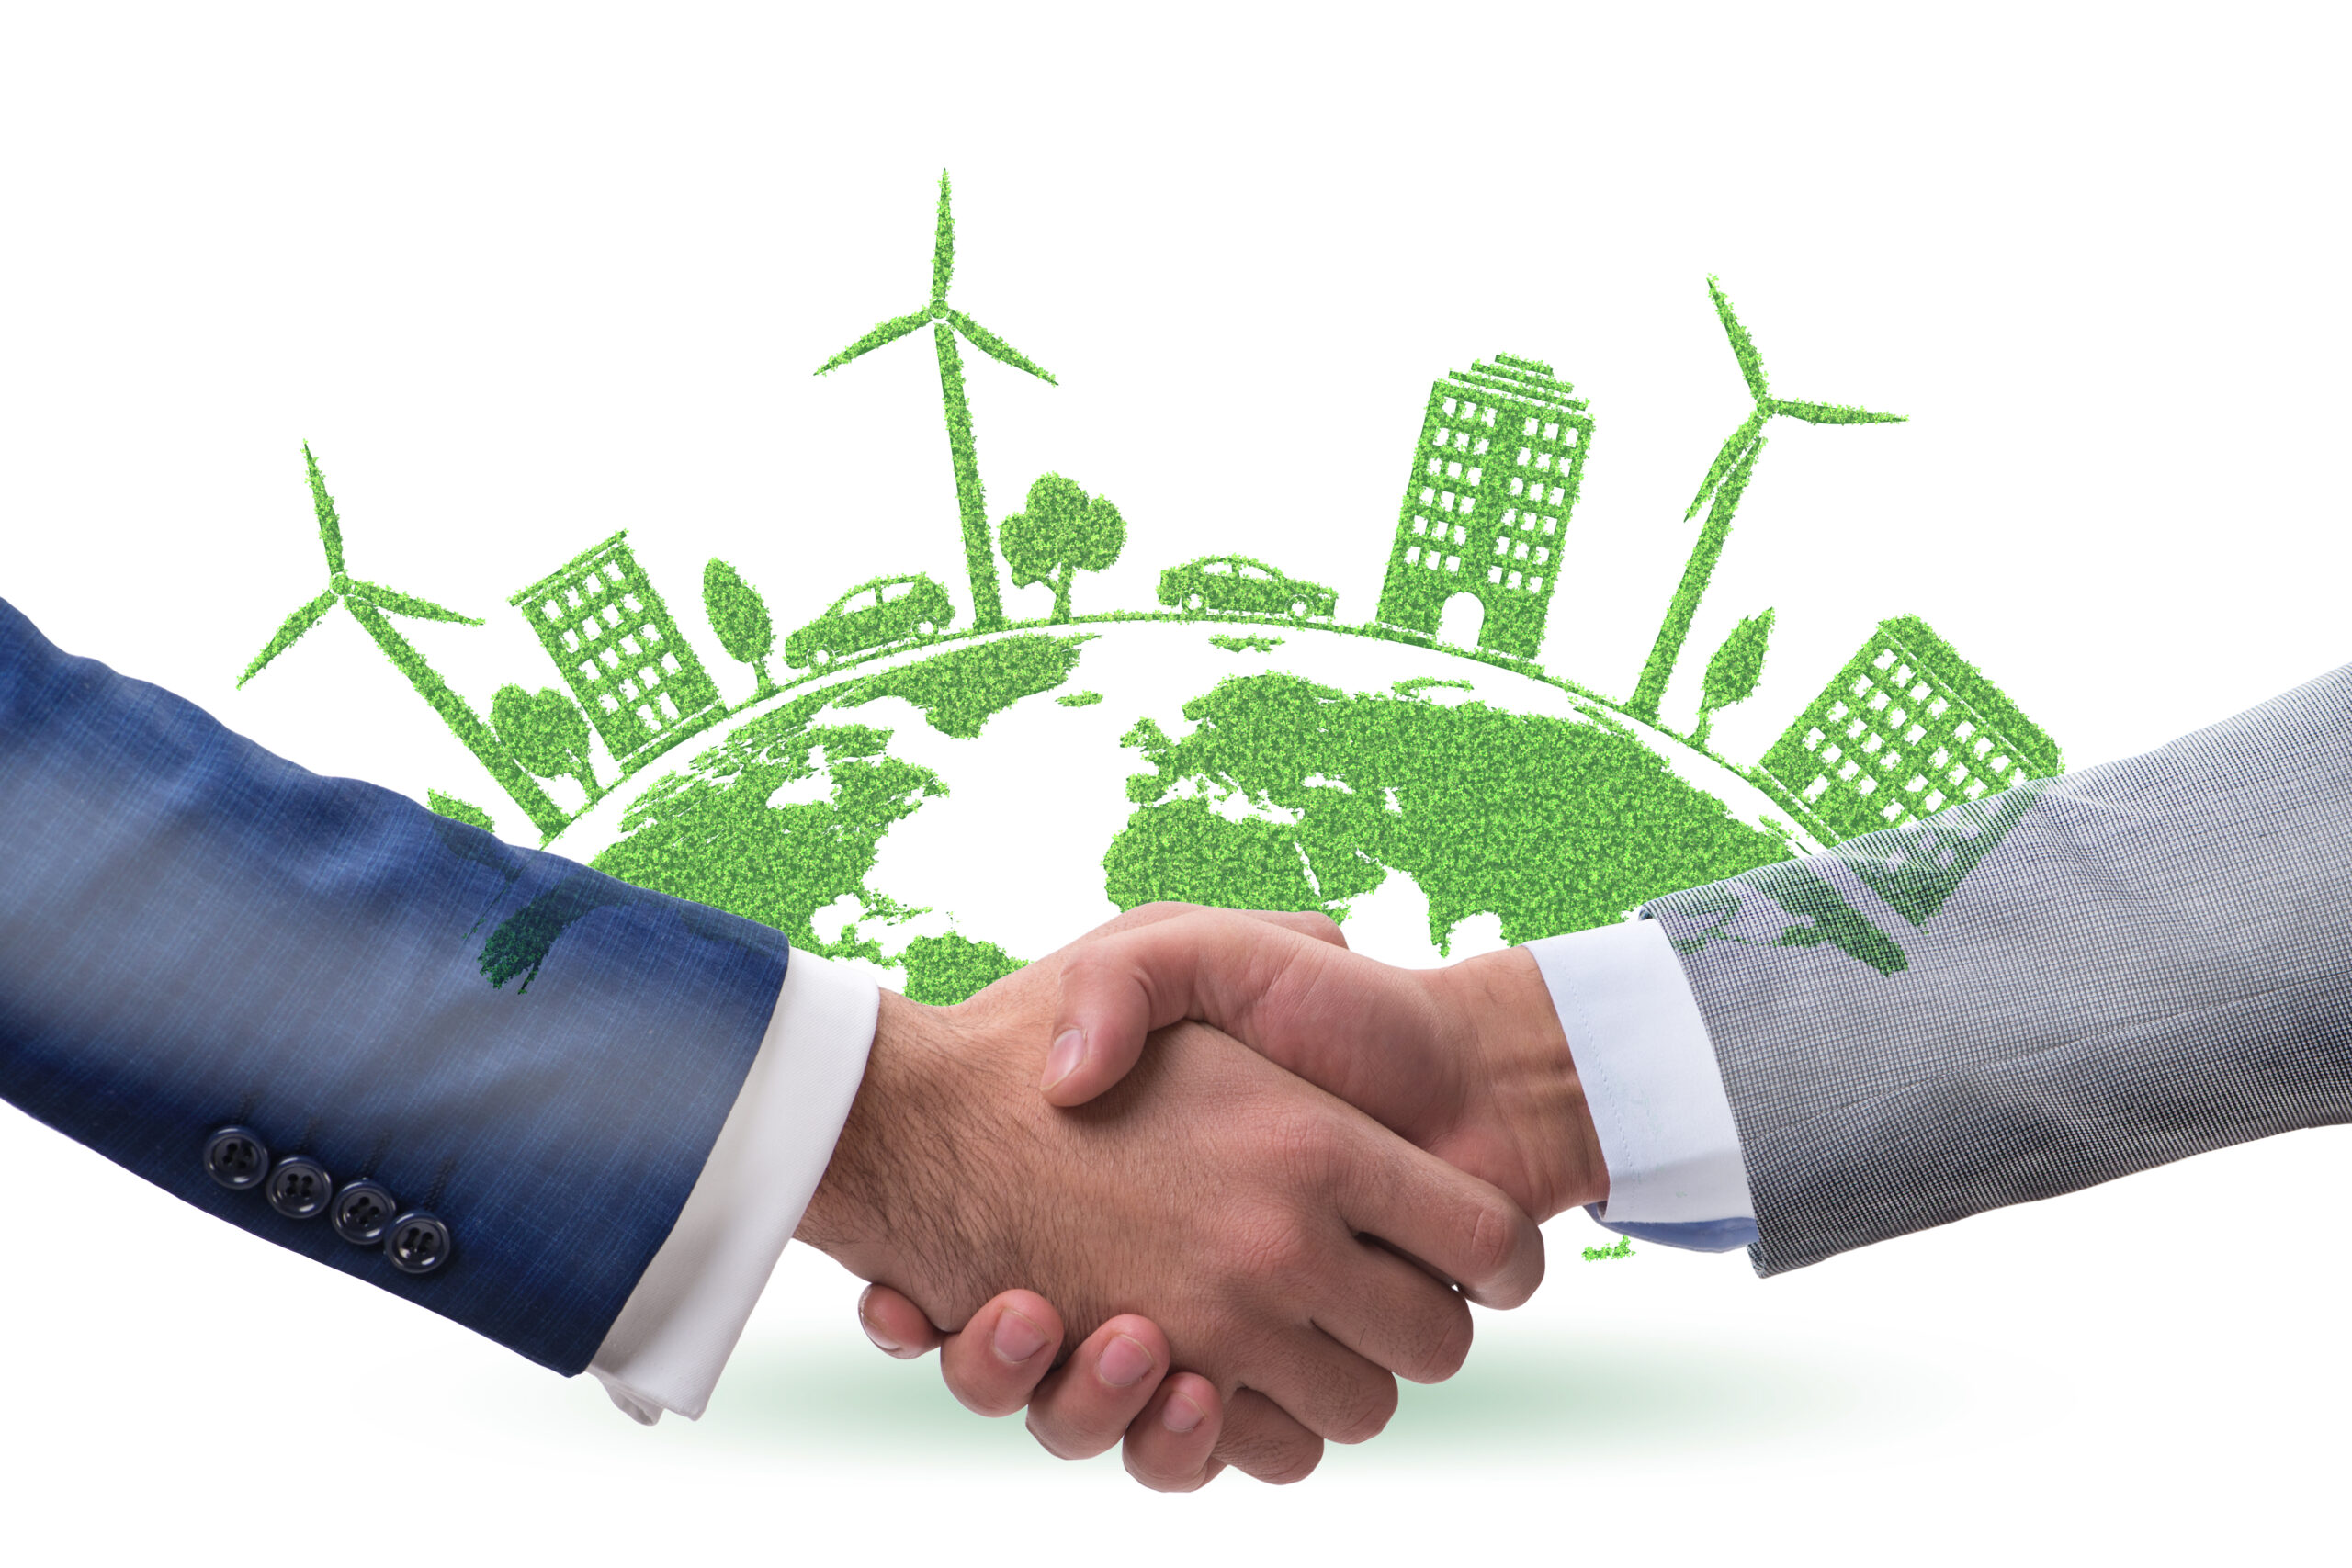 Dve roki, ki se stiskata v dogovoru pred stiliziranim zelenim in modrim globusom, okrašenim s skicami vetrnih turbin, zgradb in dreves.